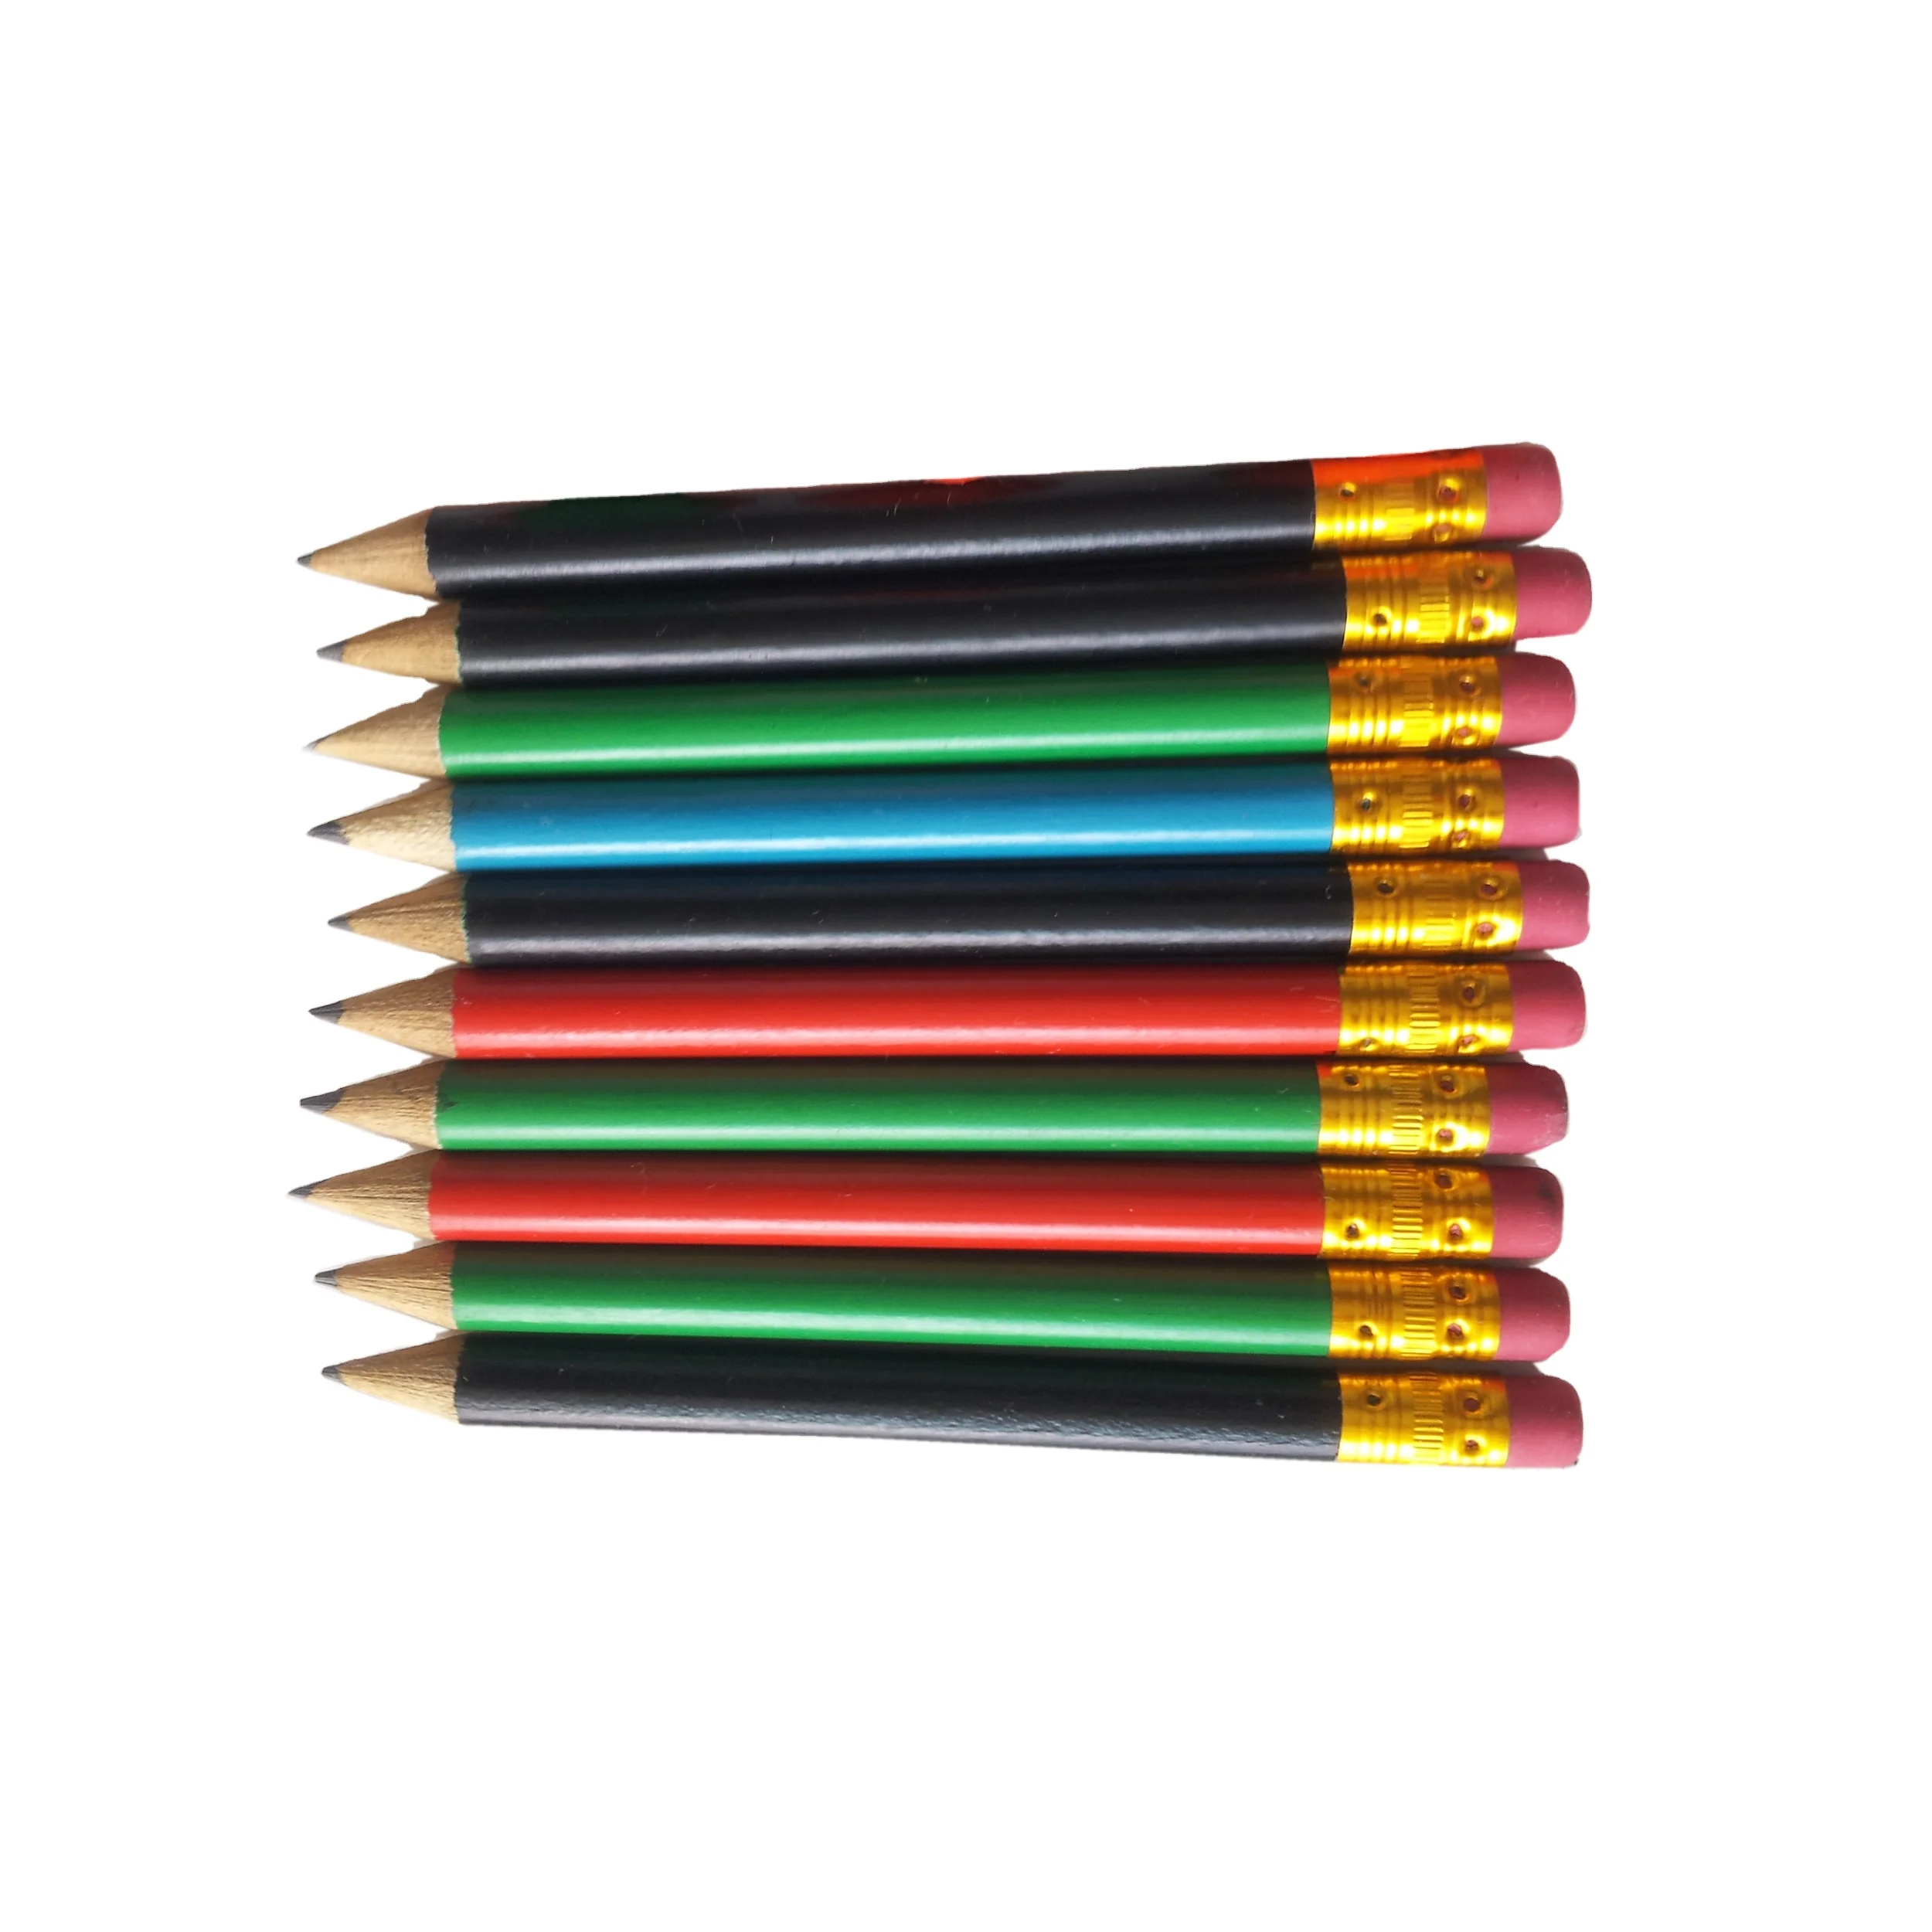 Держатель для маленького карандаша. Зажим для маленьких карандашей. Как называется маленький карандаш. Как называется штука для карандашей когда они маленькие.